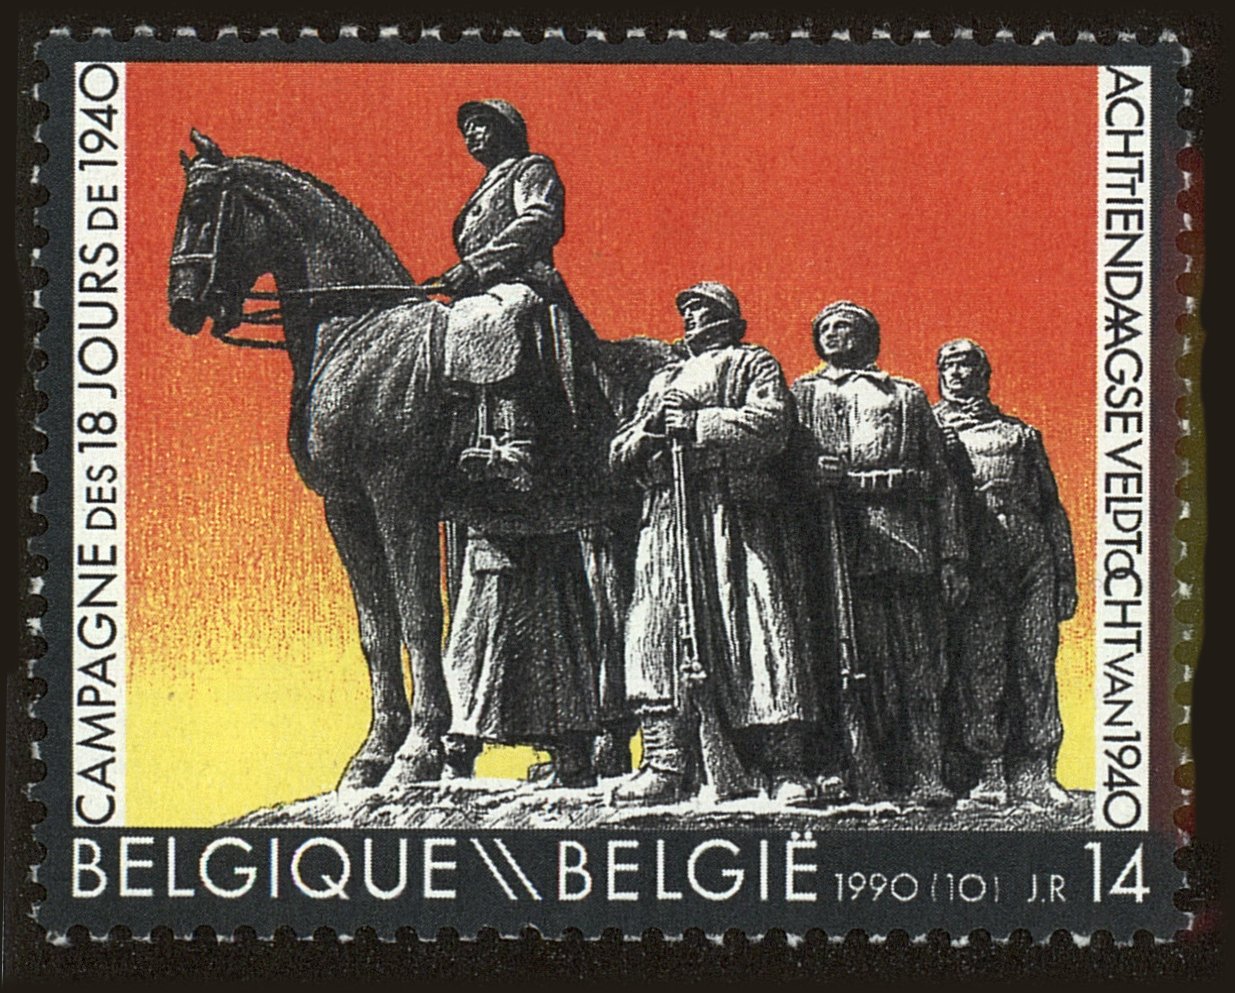 Front view of Belgium 1345 collectors stamp